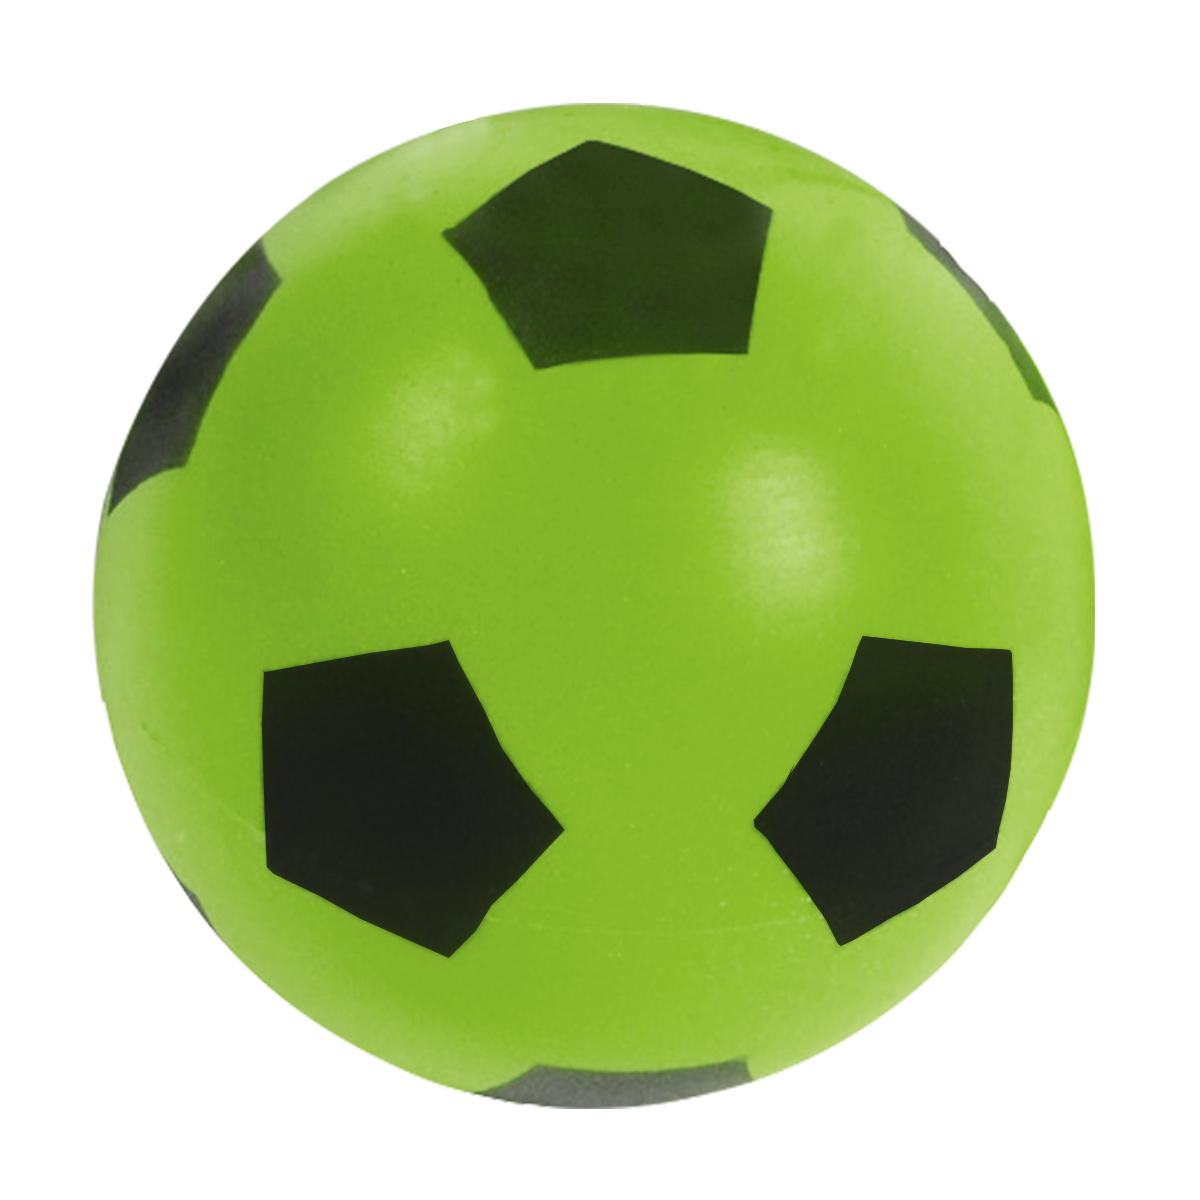 Ballon de football mousse soft 20 cm enfant, coloris vert - Resistant,  leger, eponge douce - Jeu soccer plein air - Set balle et carte